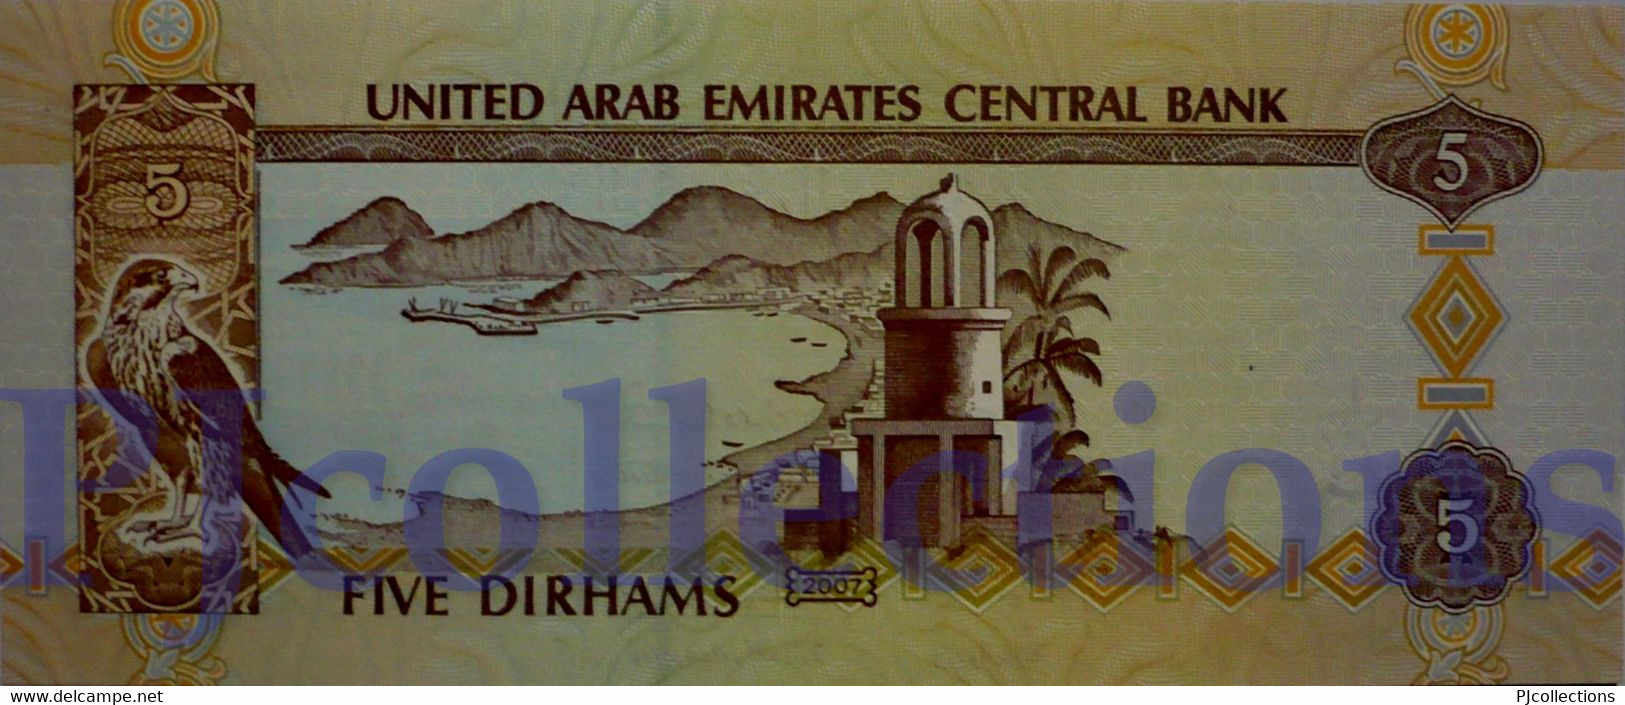 UNITED ARAB EMIRATES 5 DIRHAMS 2007 PICK 19d UNC - Ver. Arab. Emirate